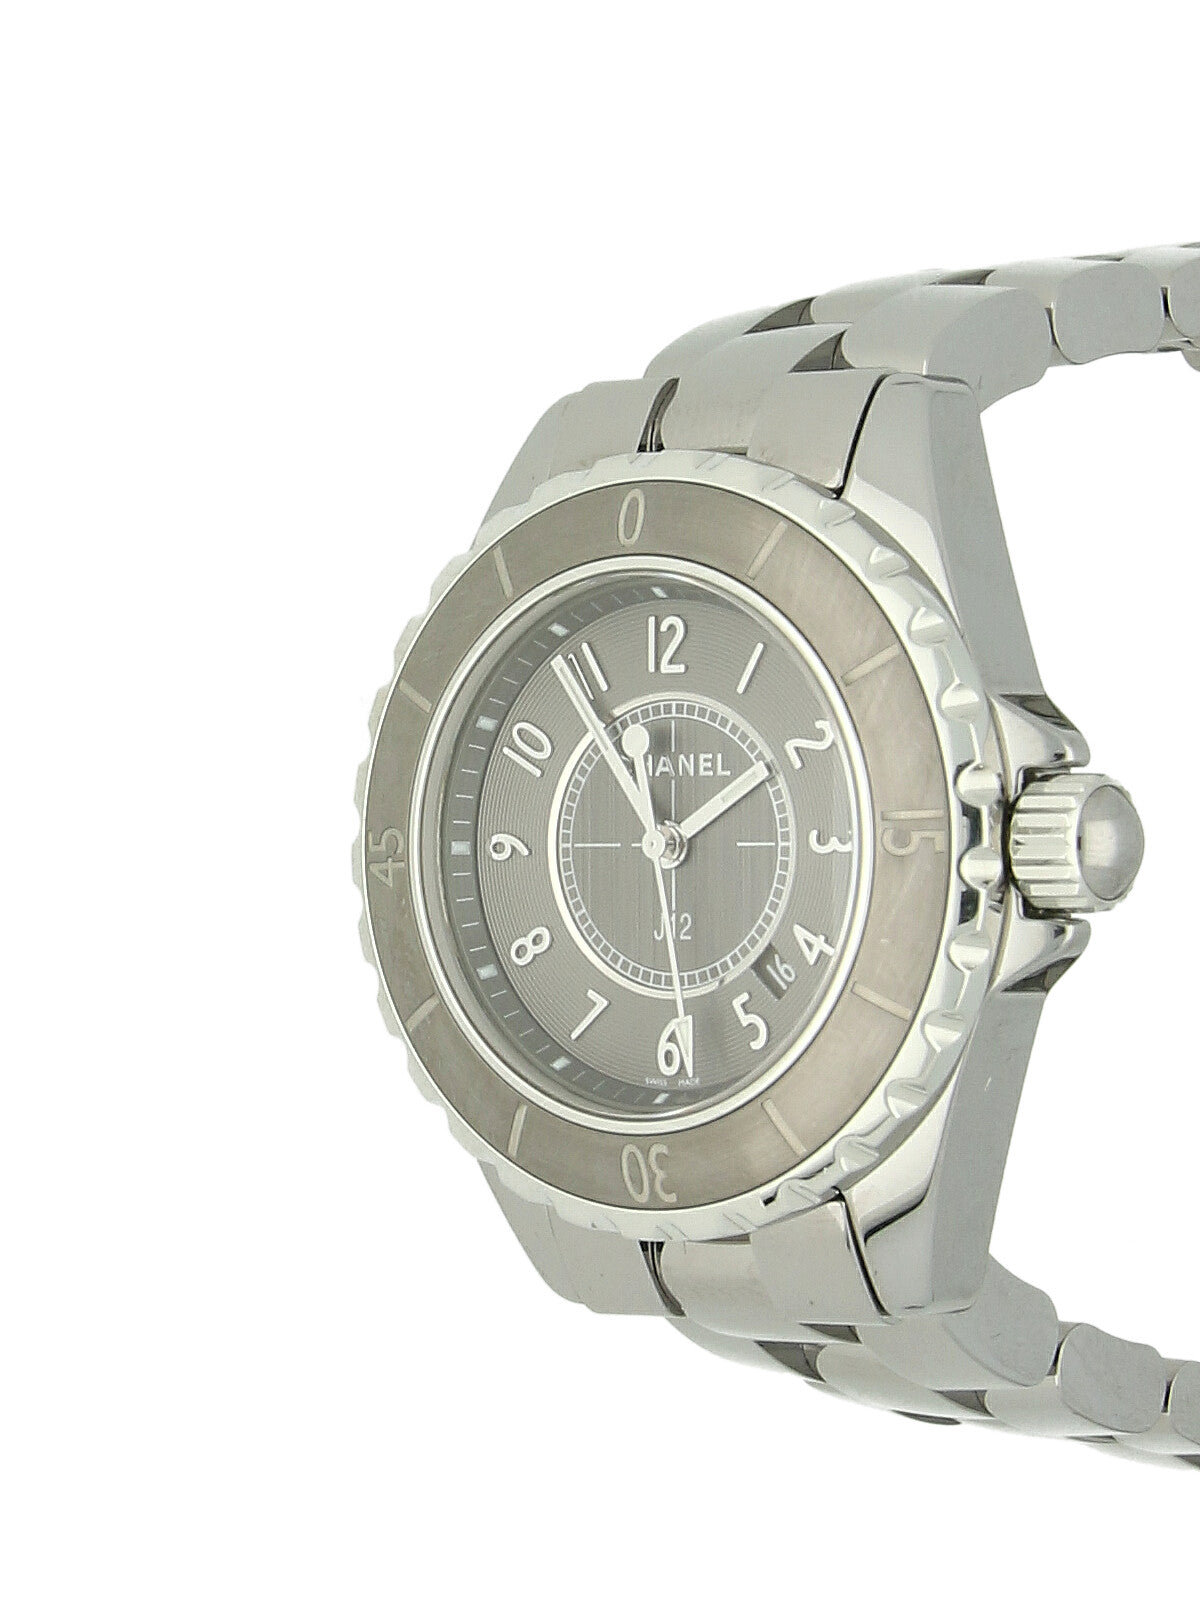 Pre Owned Chanel J12 Steel Quartz Watch on Bracelet - W.Bruford